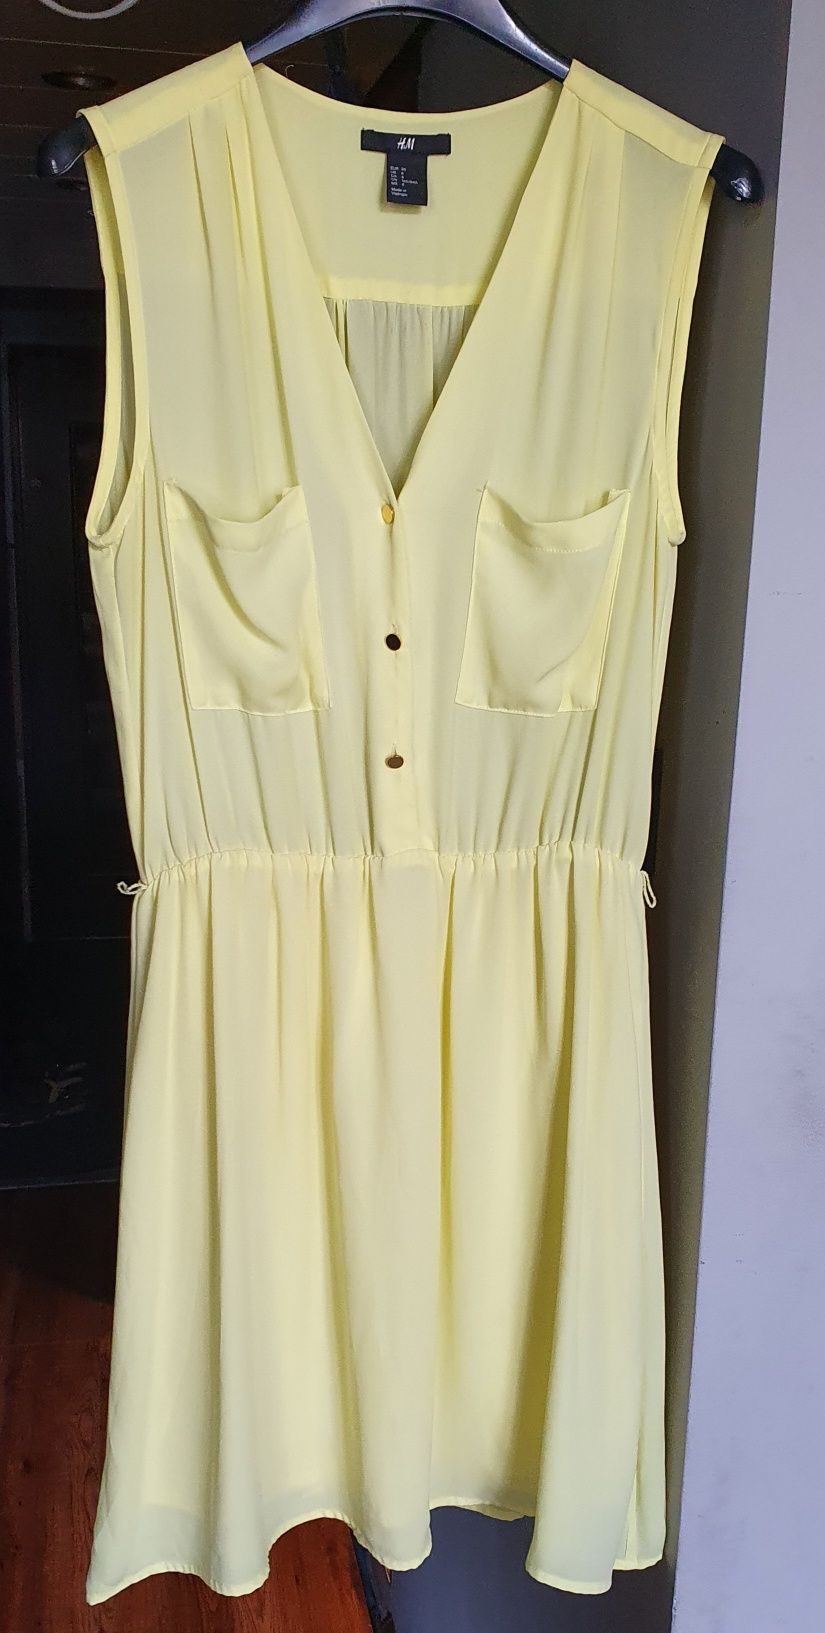 Cytrynowa sukienka H&M 36